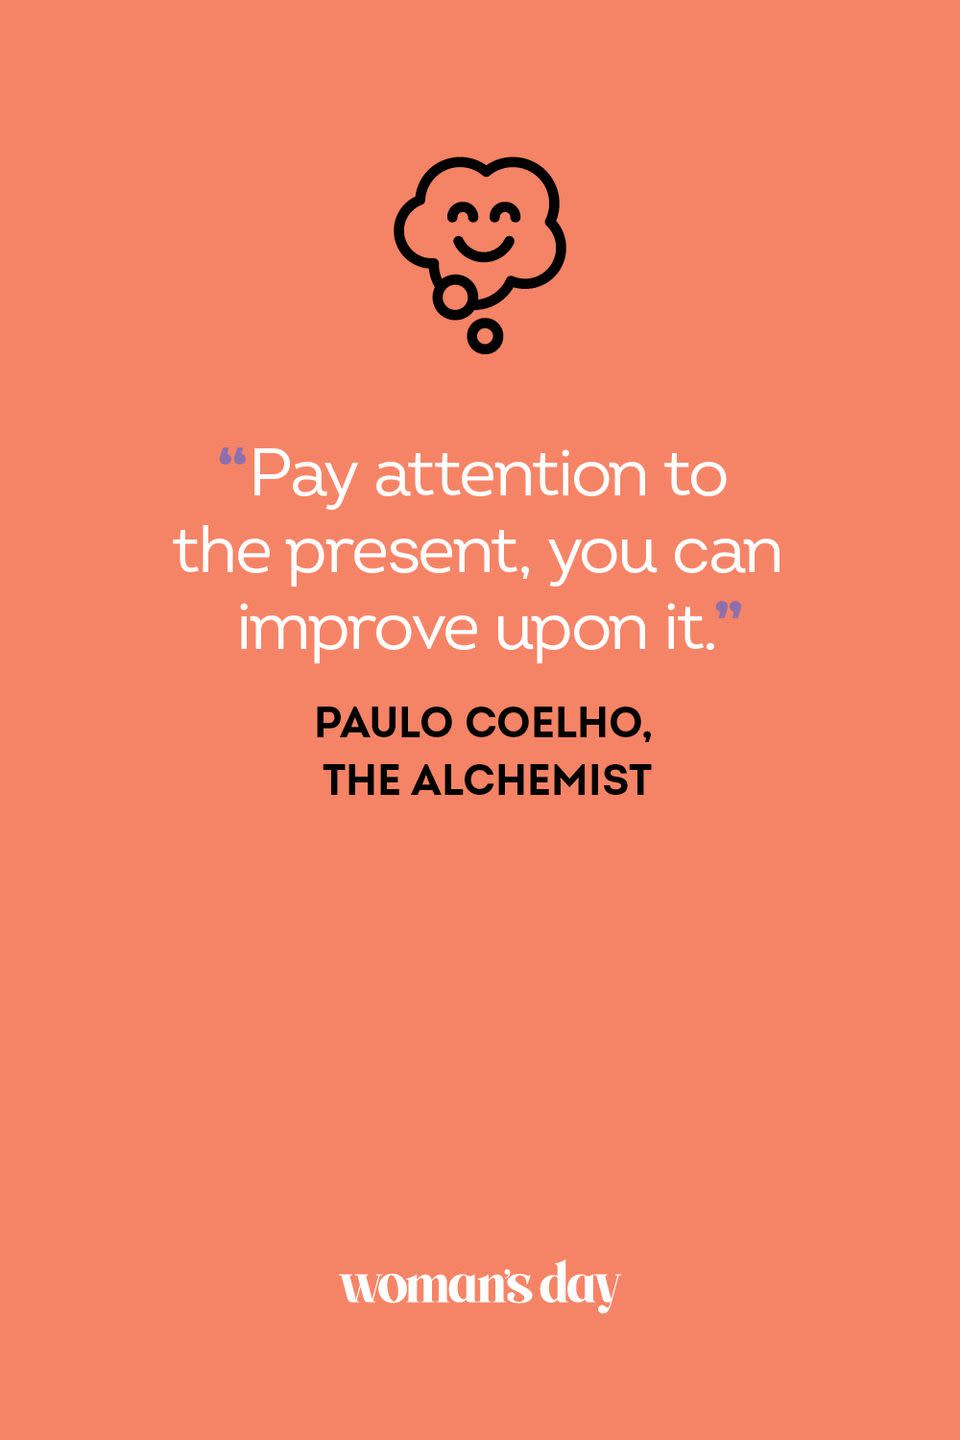 Paulo Coelho, 'The Alchemist'